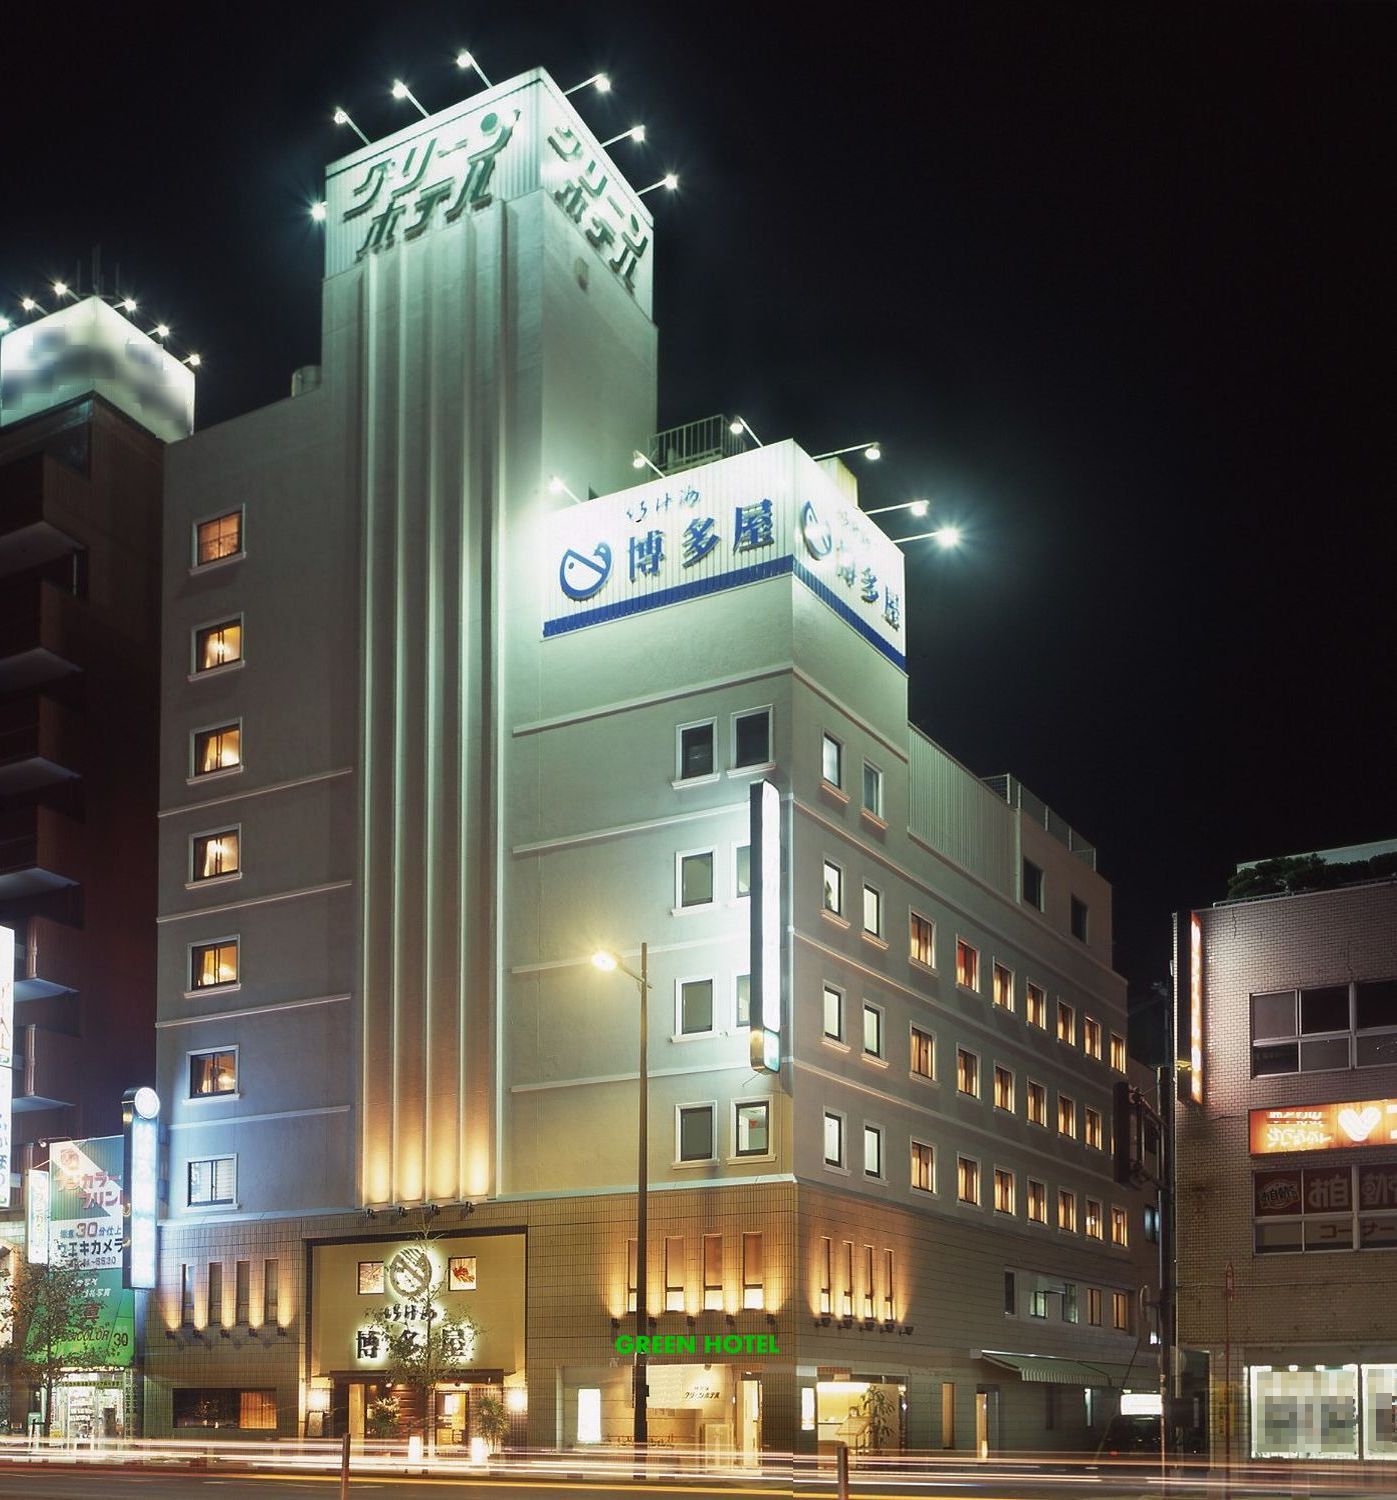 【出張】長崎県佐世保におすすめの格安ビジネスホテル